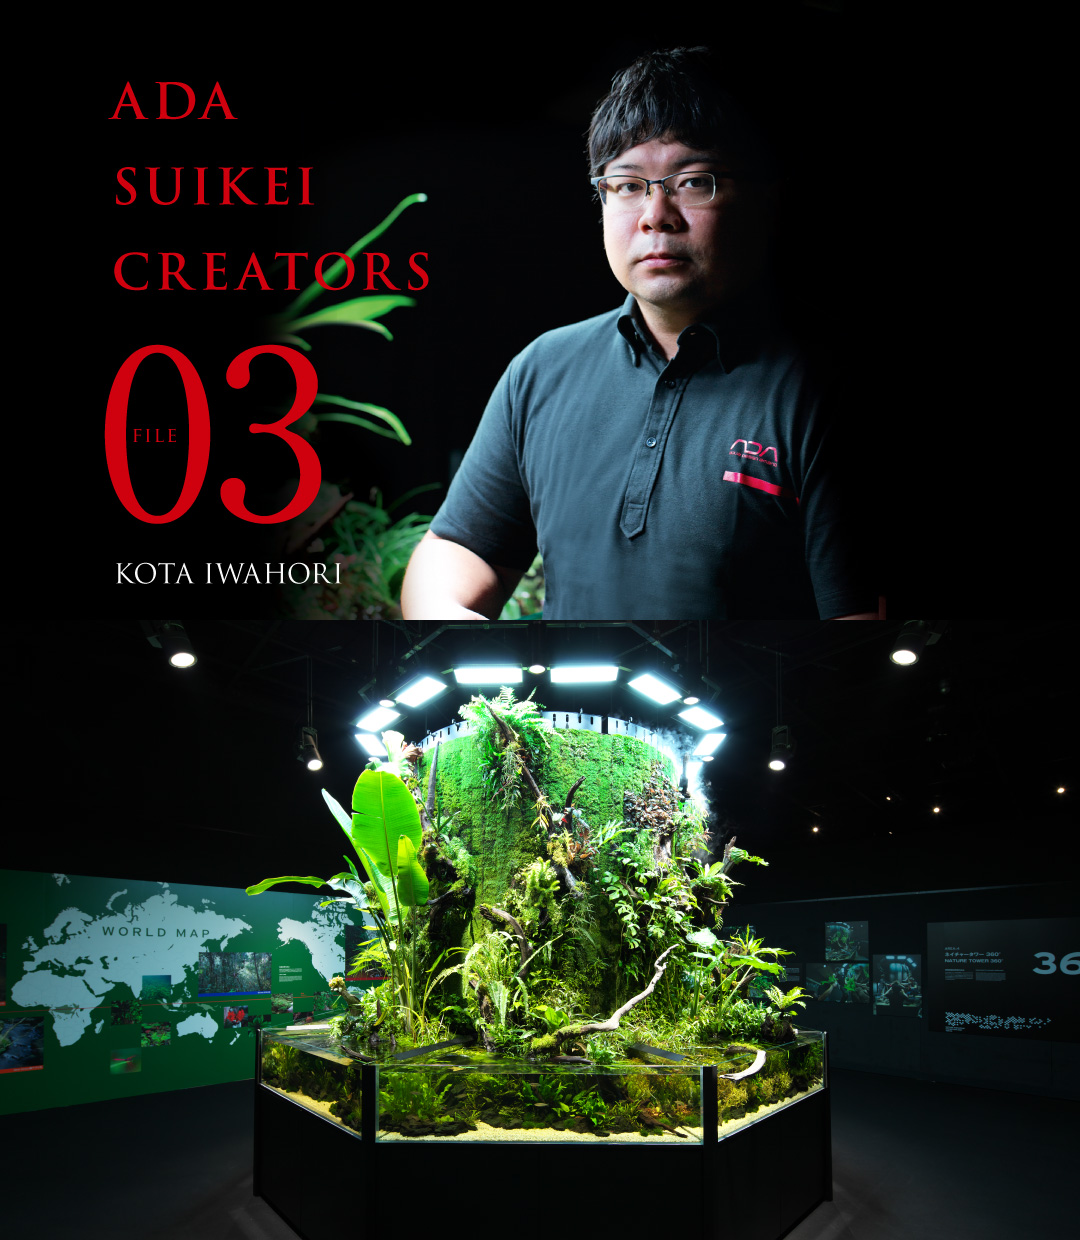 ADA SUIKEI CREATORS #03 Kota Iwahori